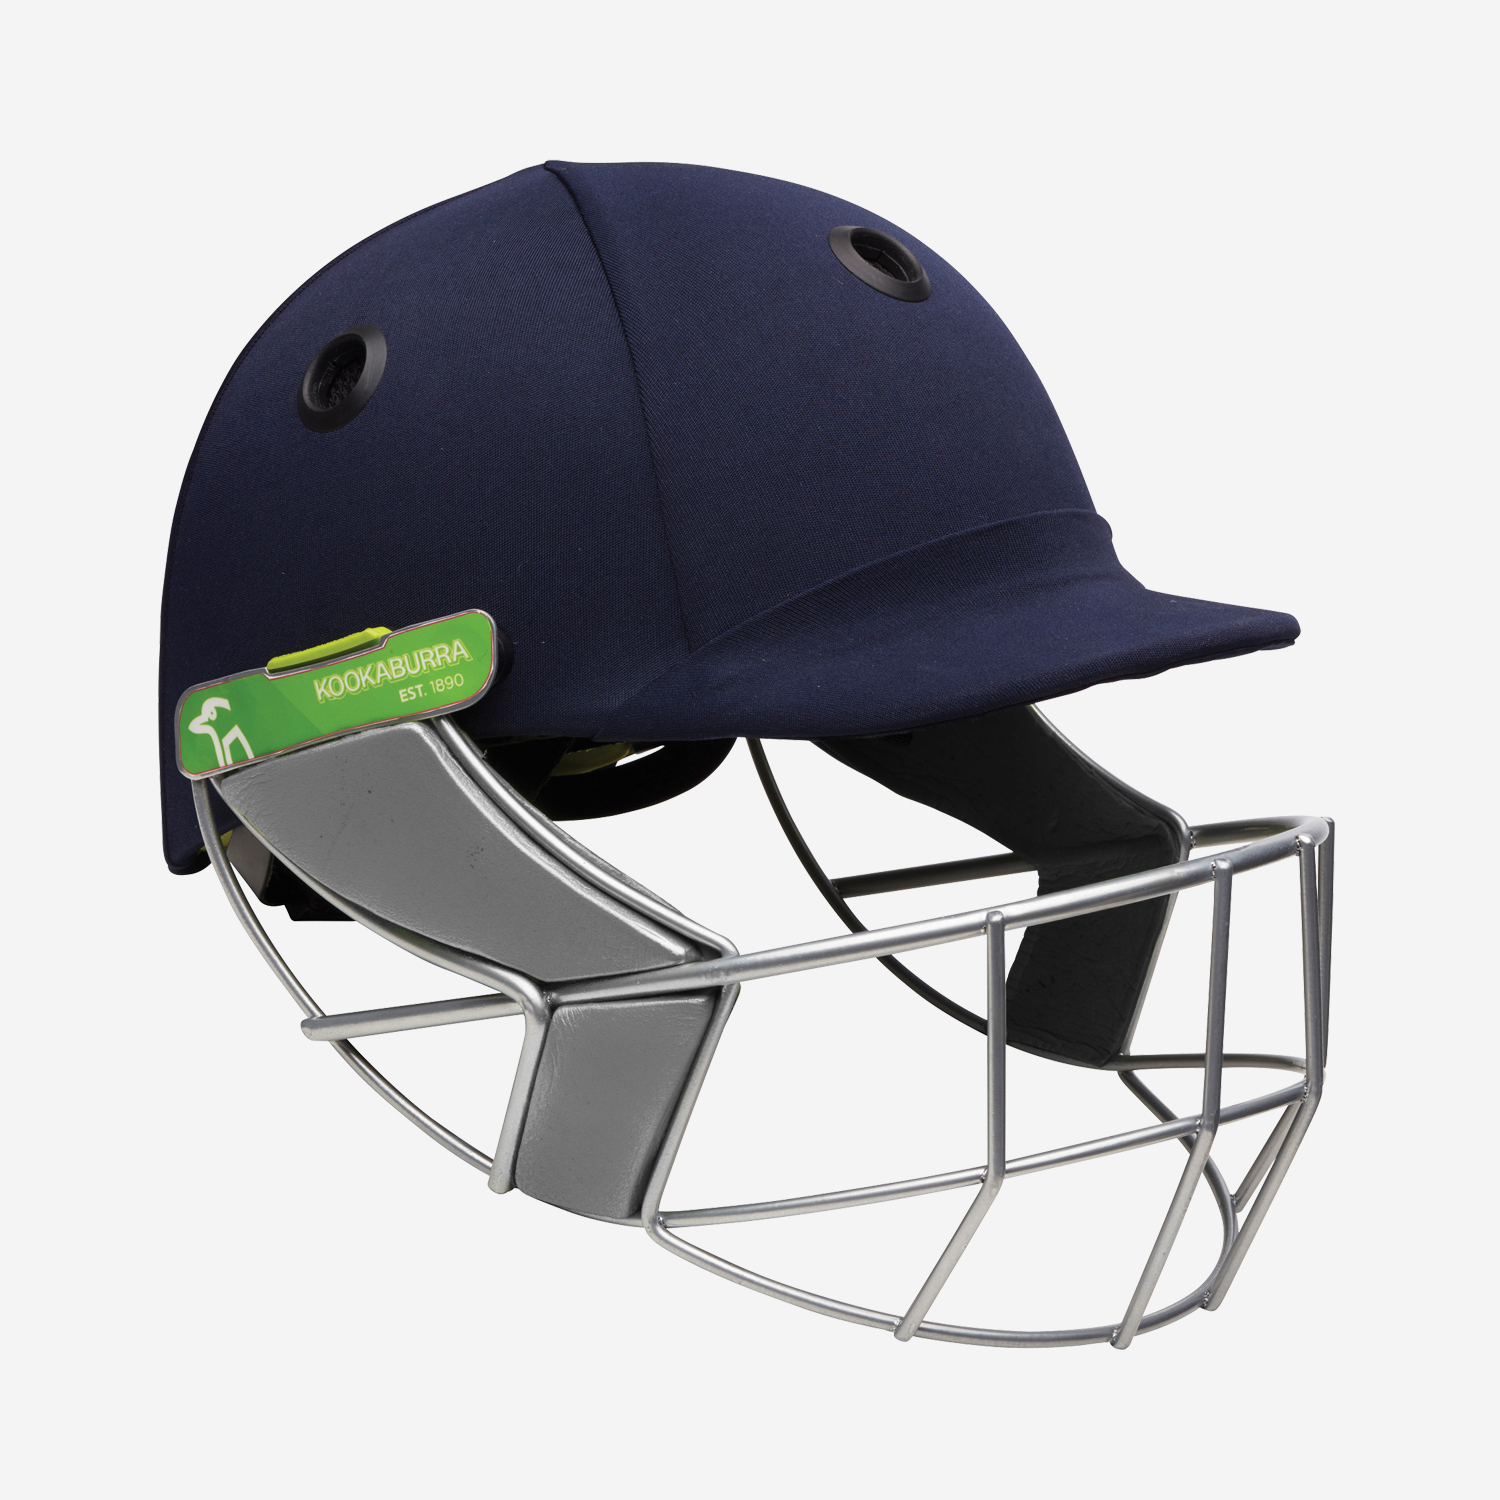 Pro 1200 Cricket Helmet